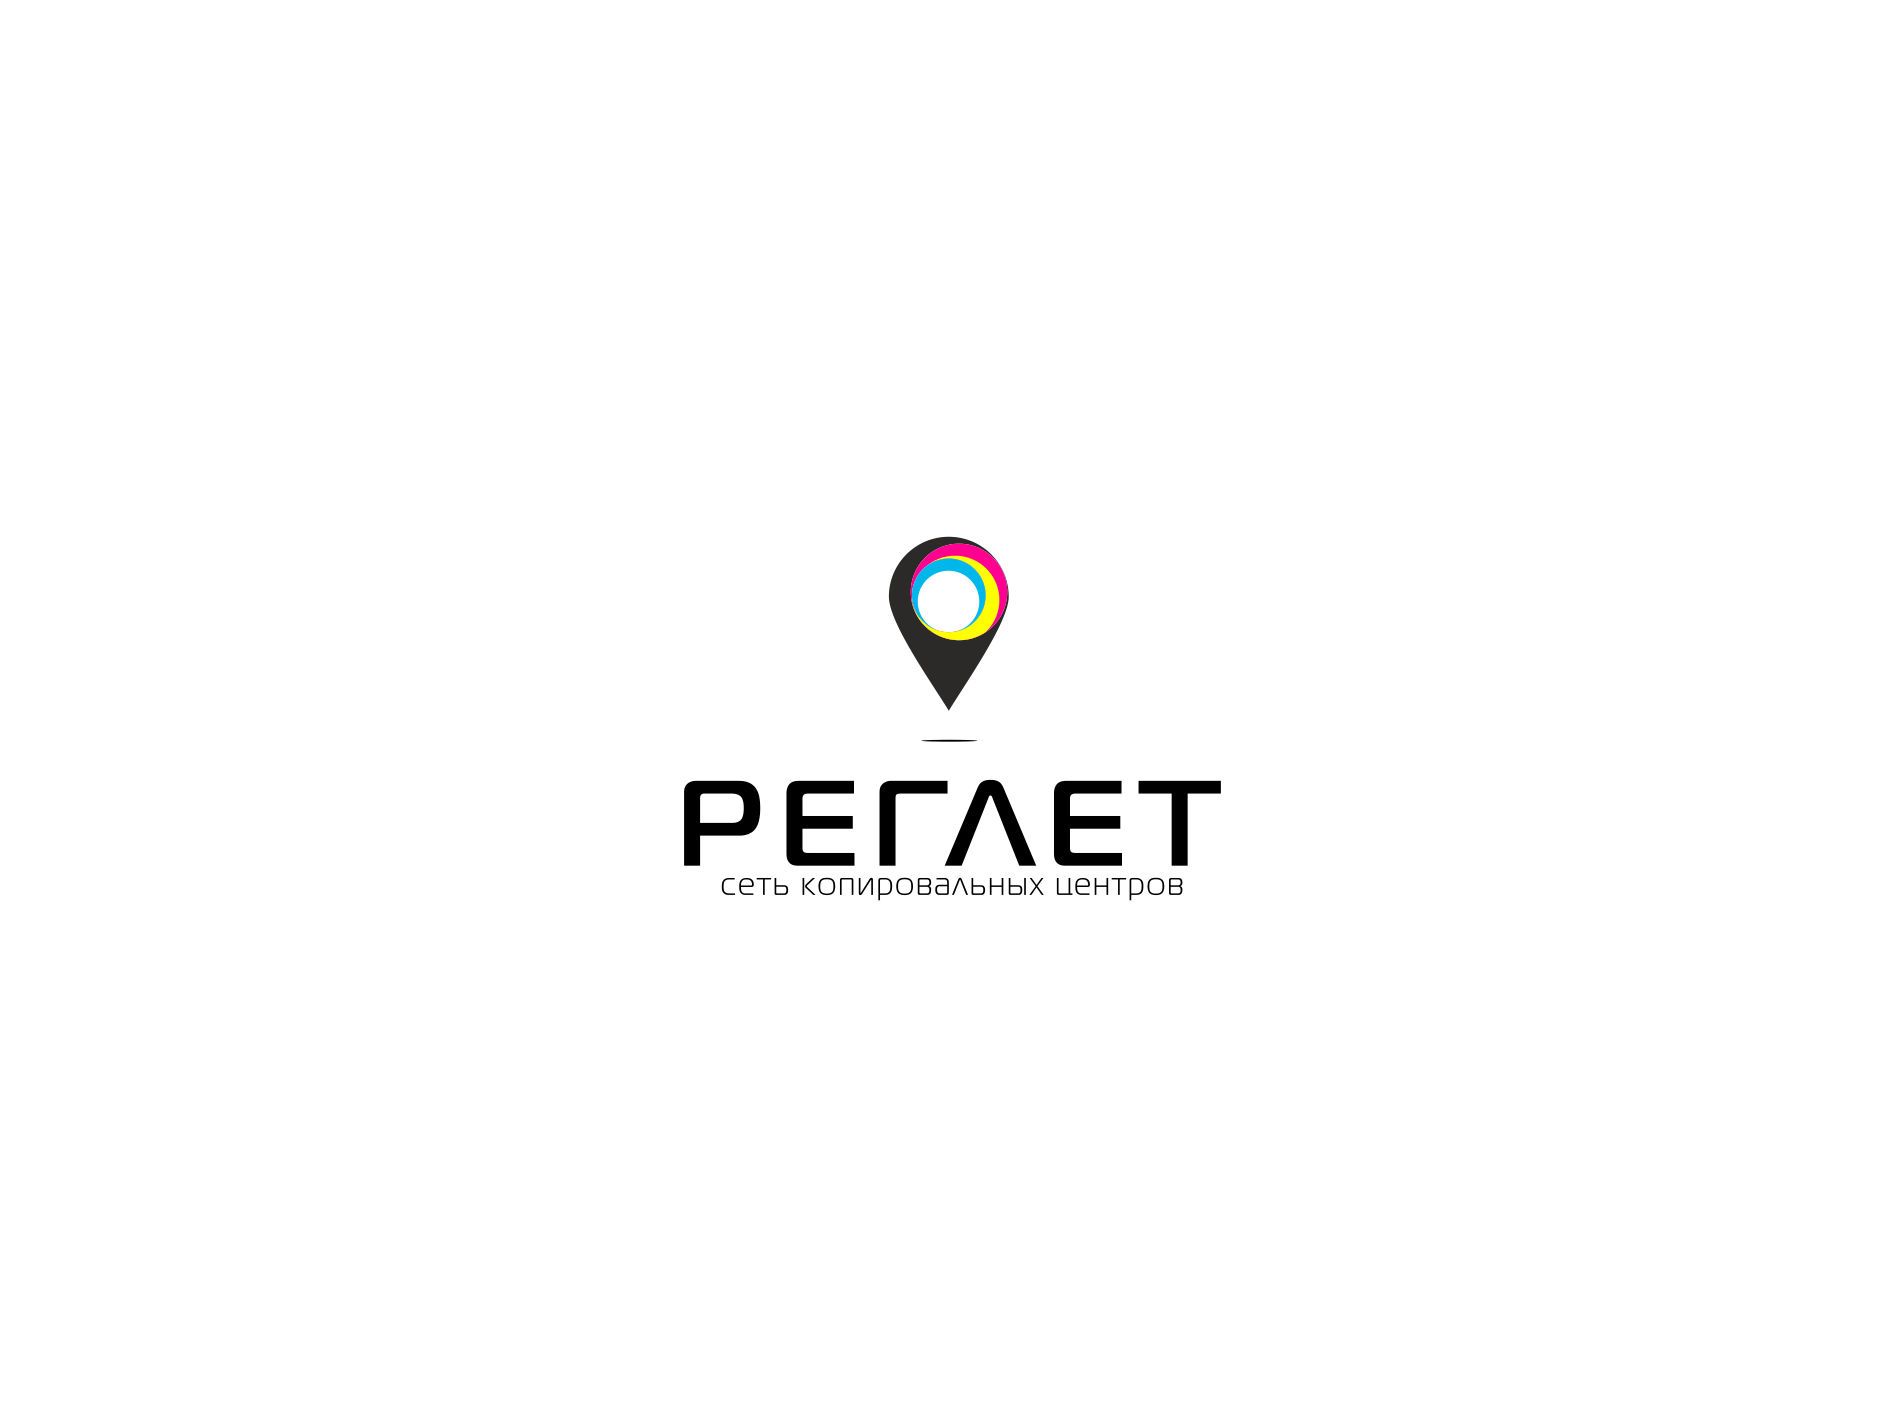 Лого и фирменный стиль для Реглет (сеть копировальных центров) - дизайнер LogoPAB